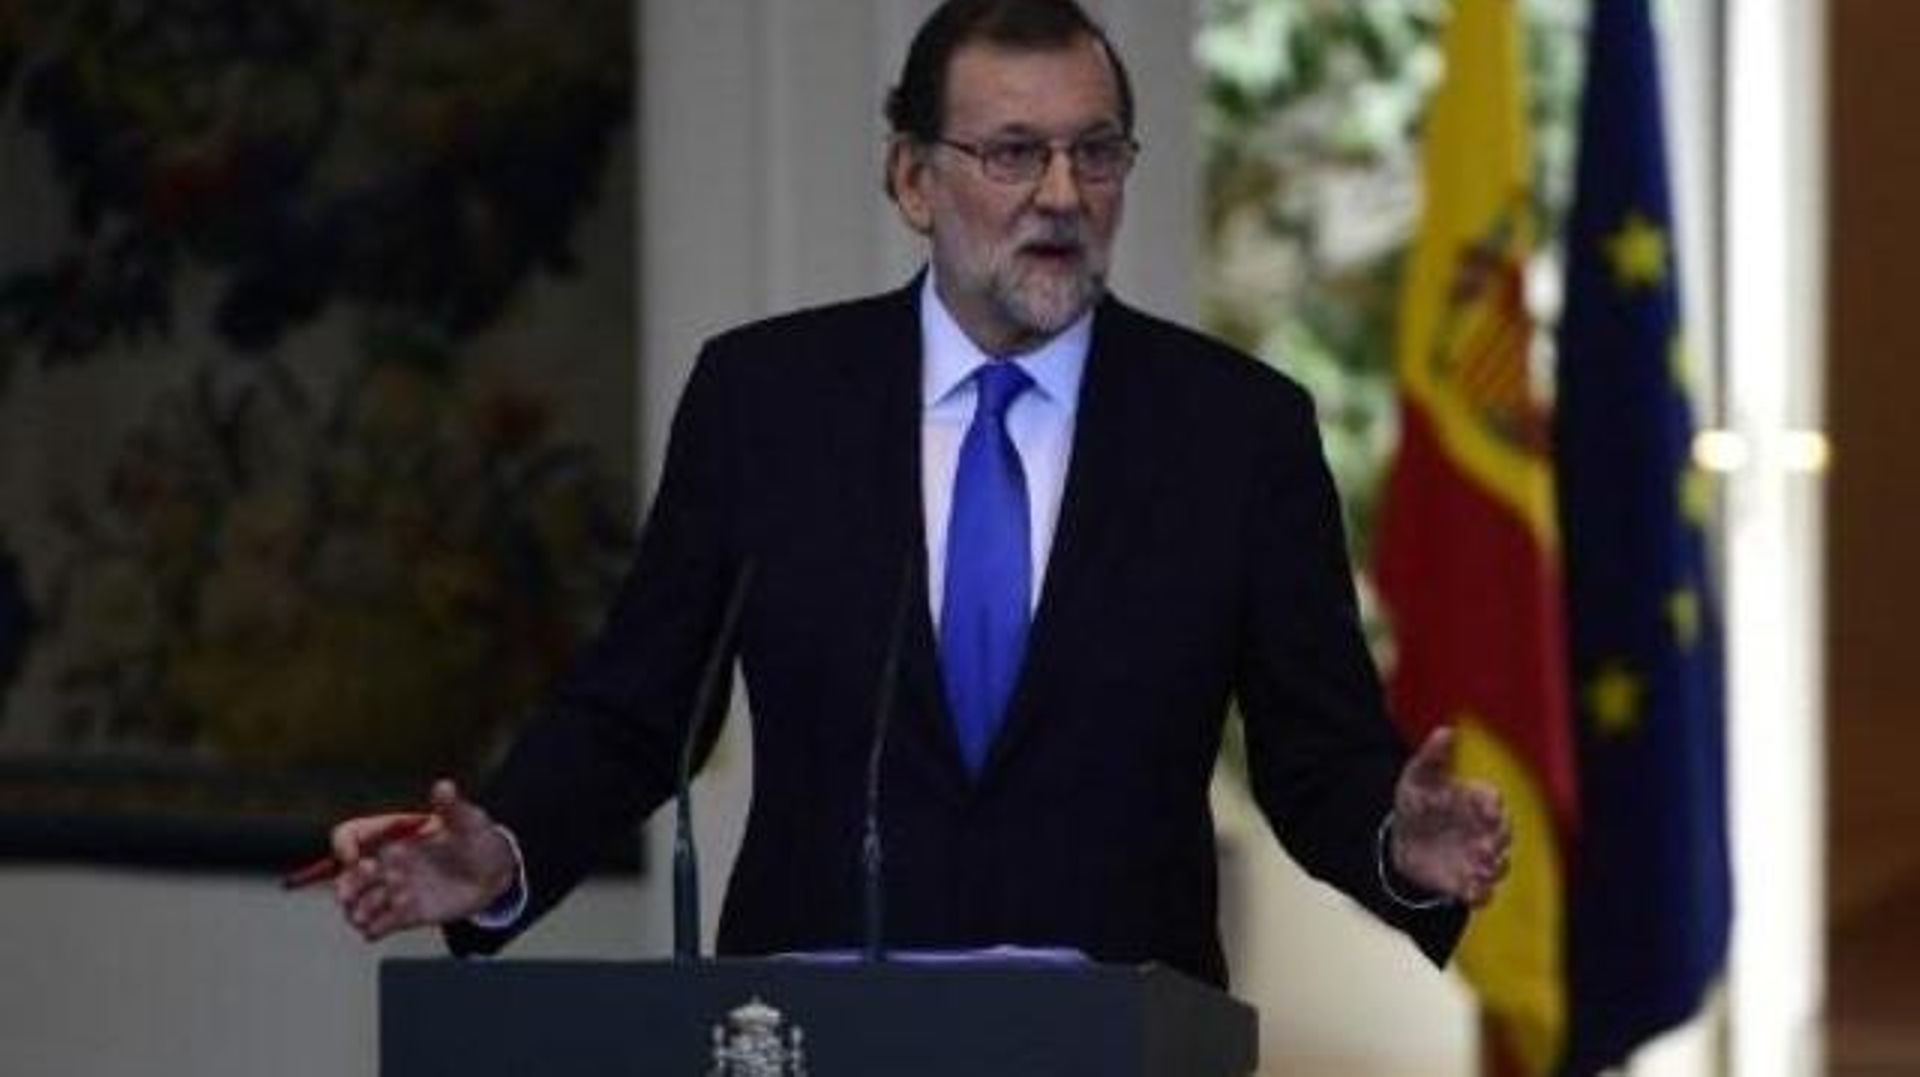 Espagne: "Il n'y aura pas de référendum en Catalogne", assure M. Rajoy